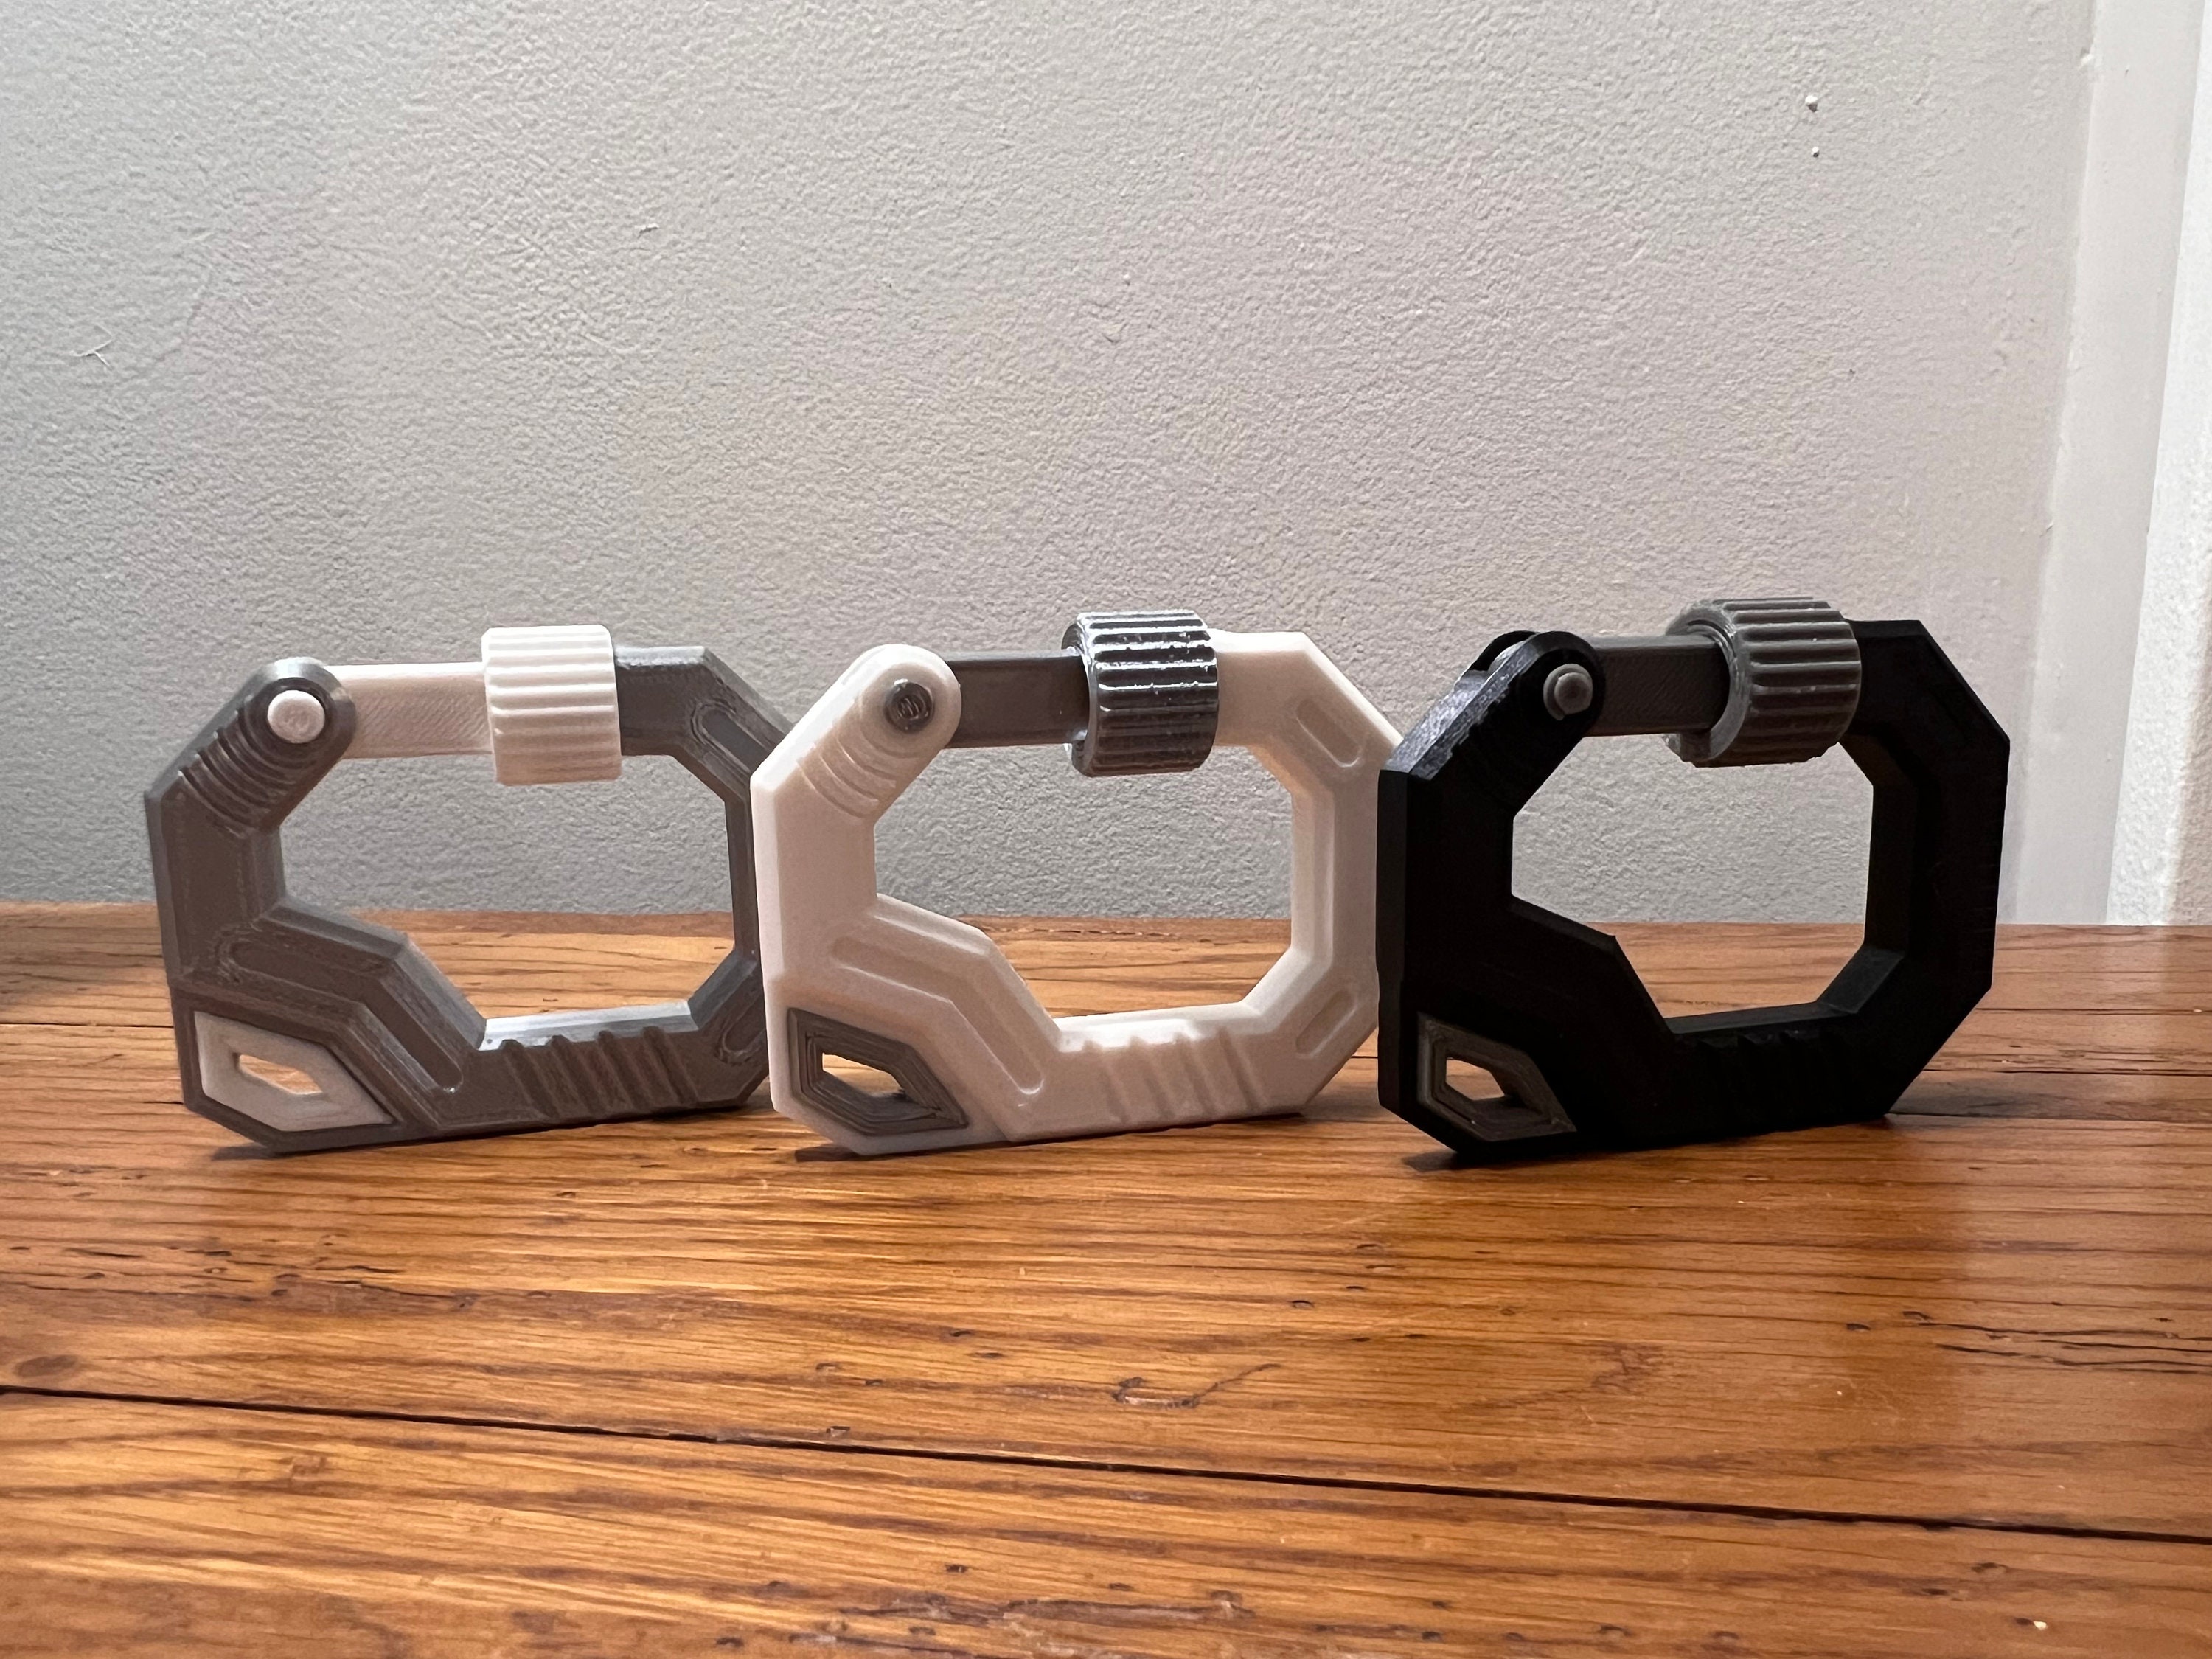 3D Carabiner - Etsy